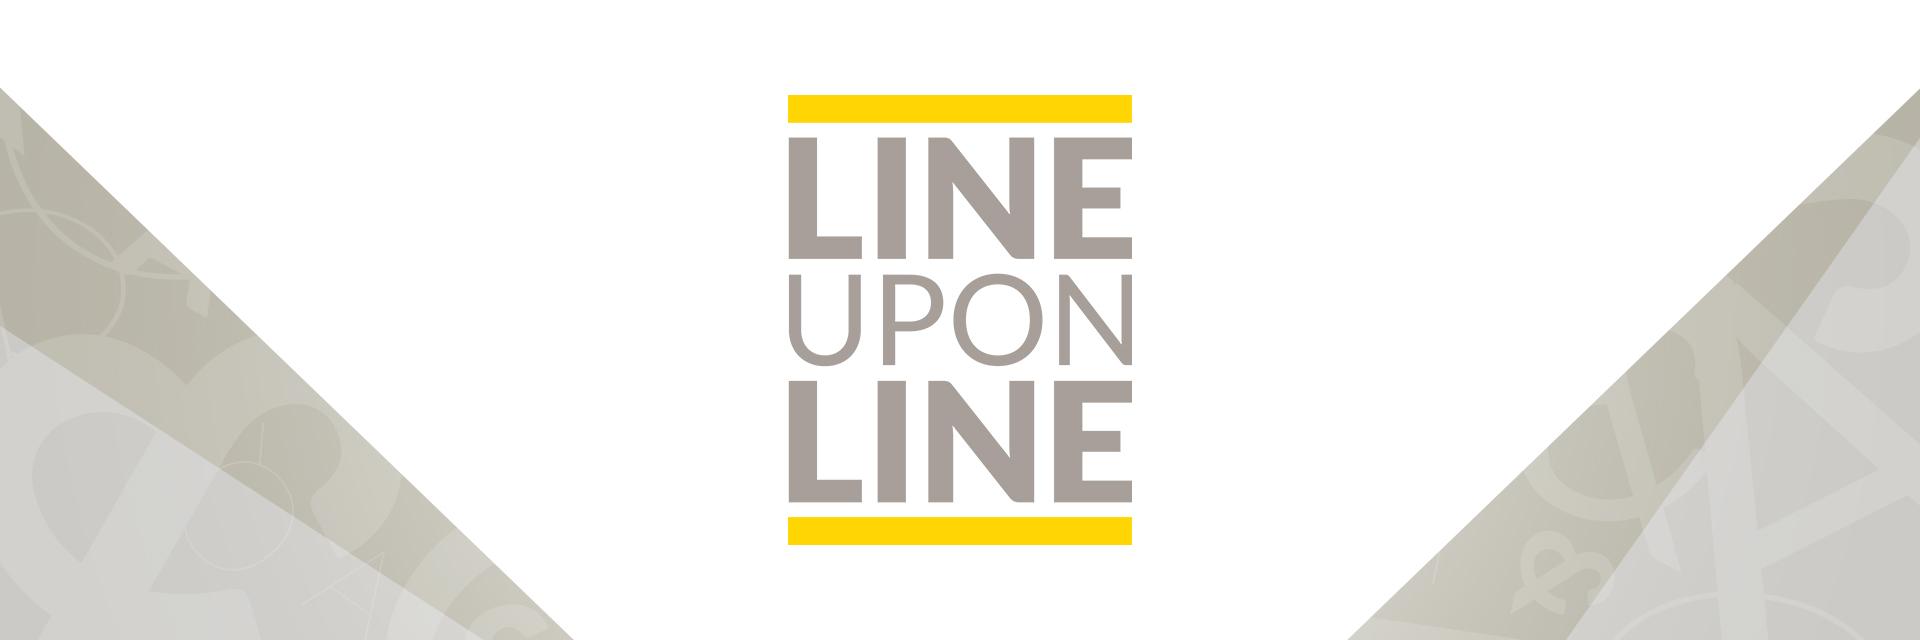 Line Upon Line image